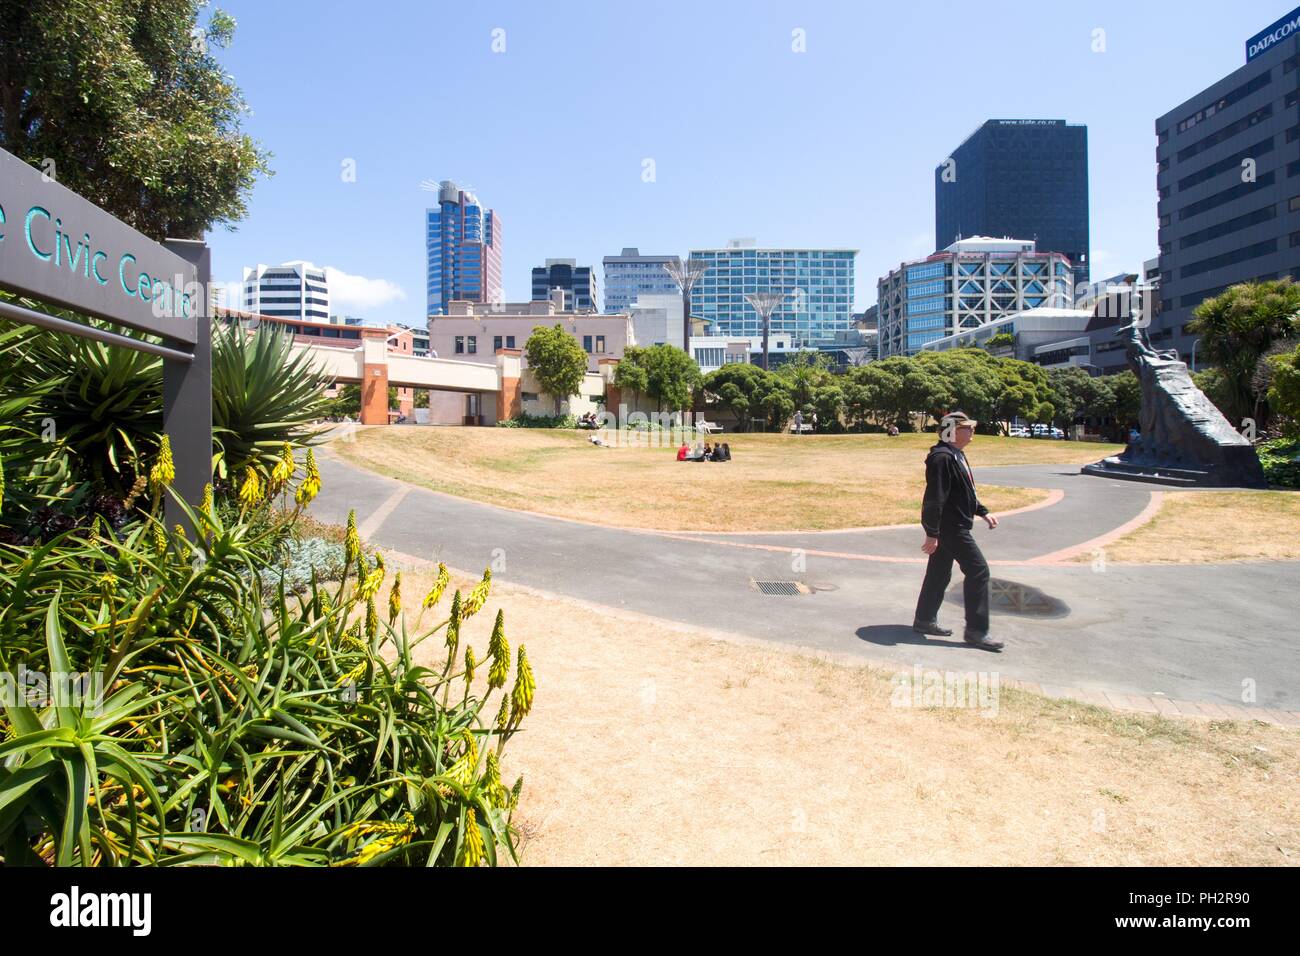 Un uomo cammina giù per un sentiero passato un segno lettura Civic Center nel centro di Wellington, Nuova Zelanda, 28 novembre 2017. () Foto Stock